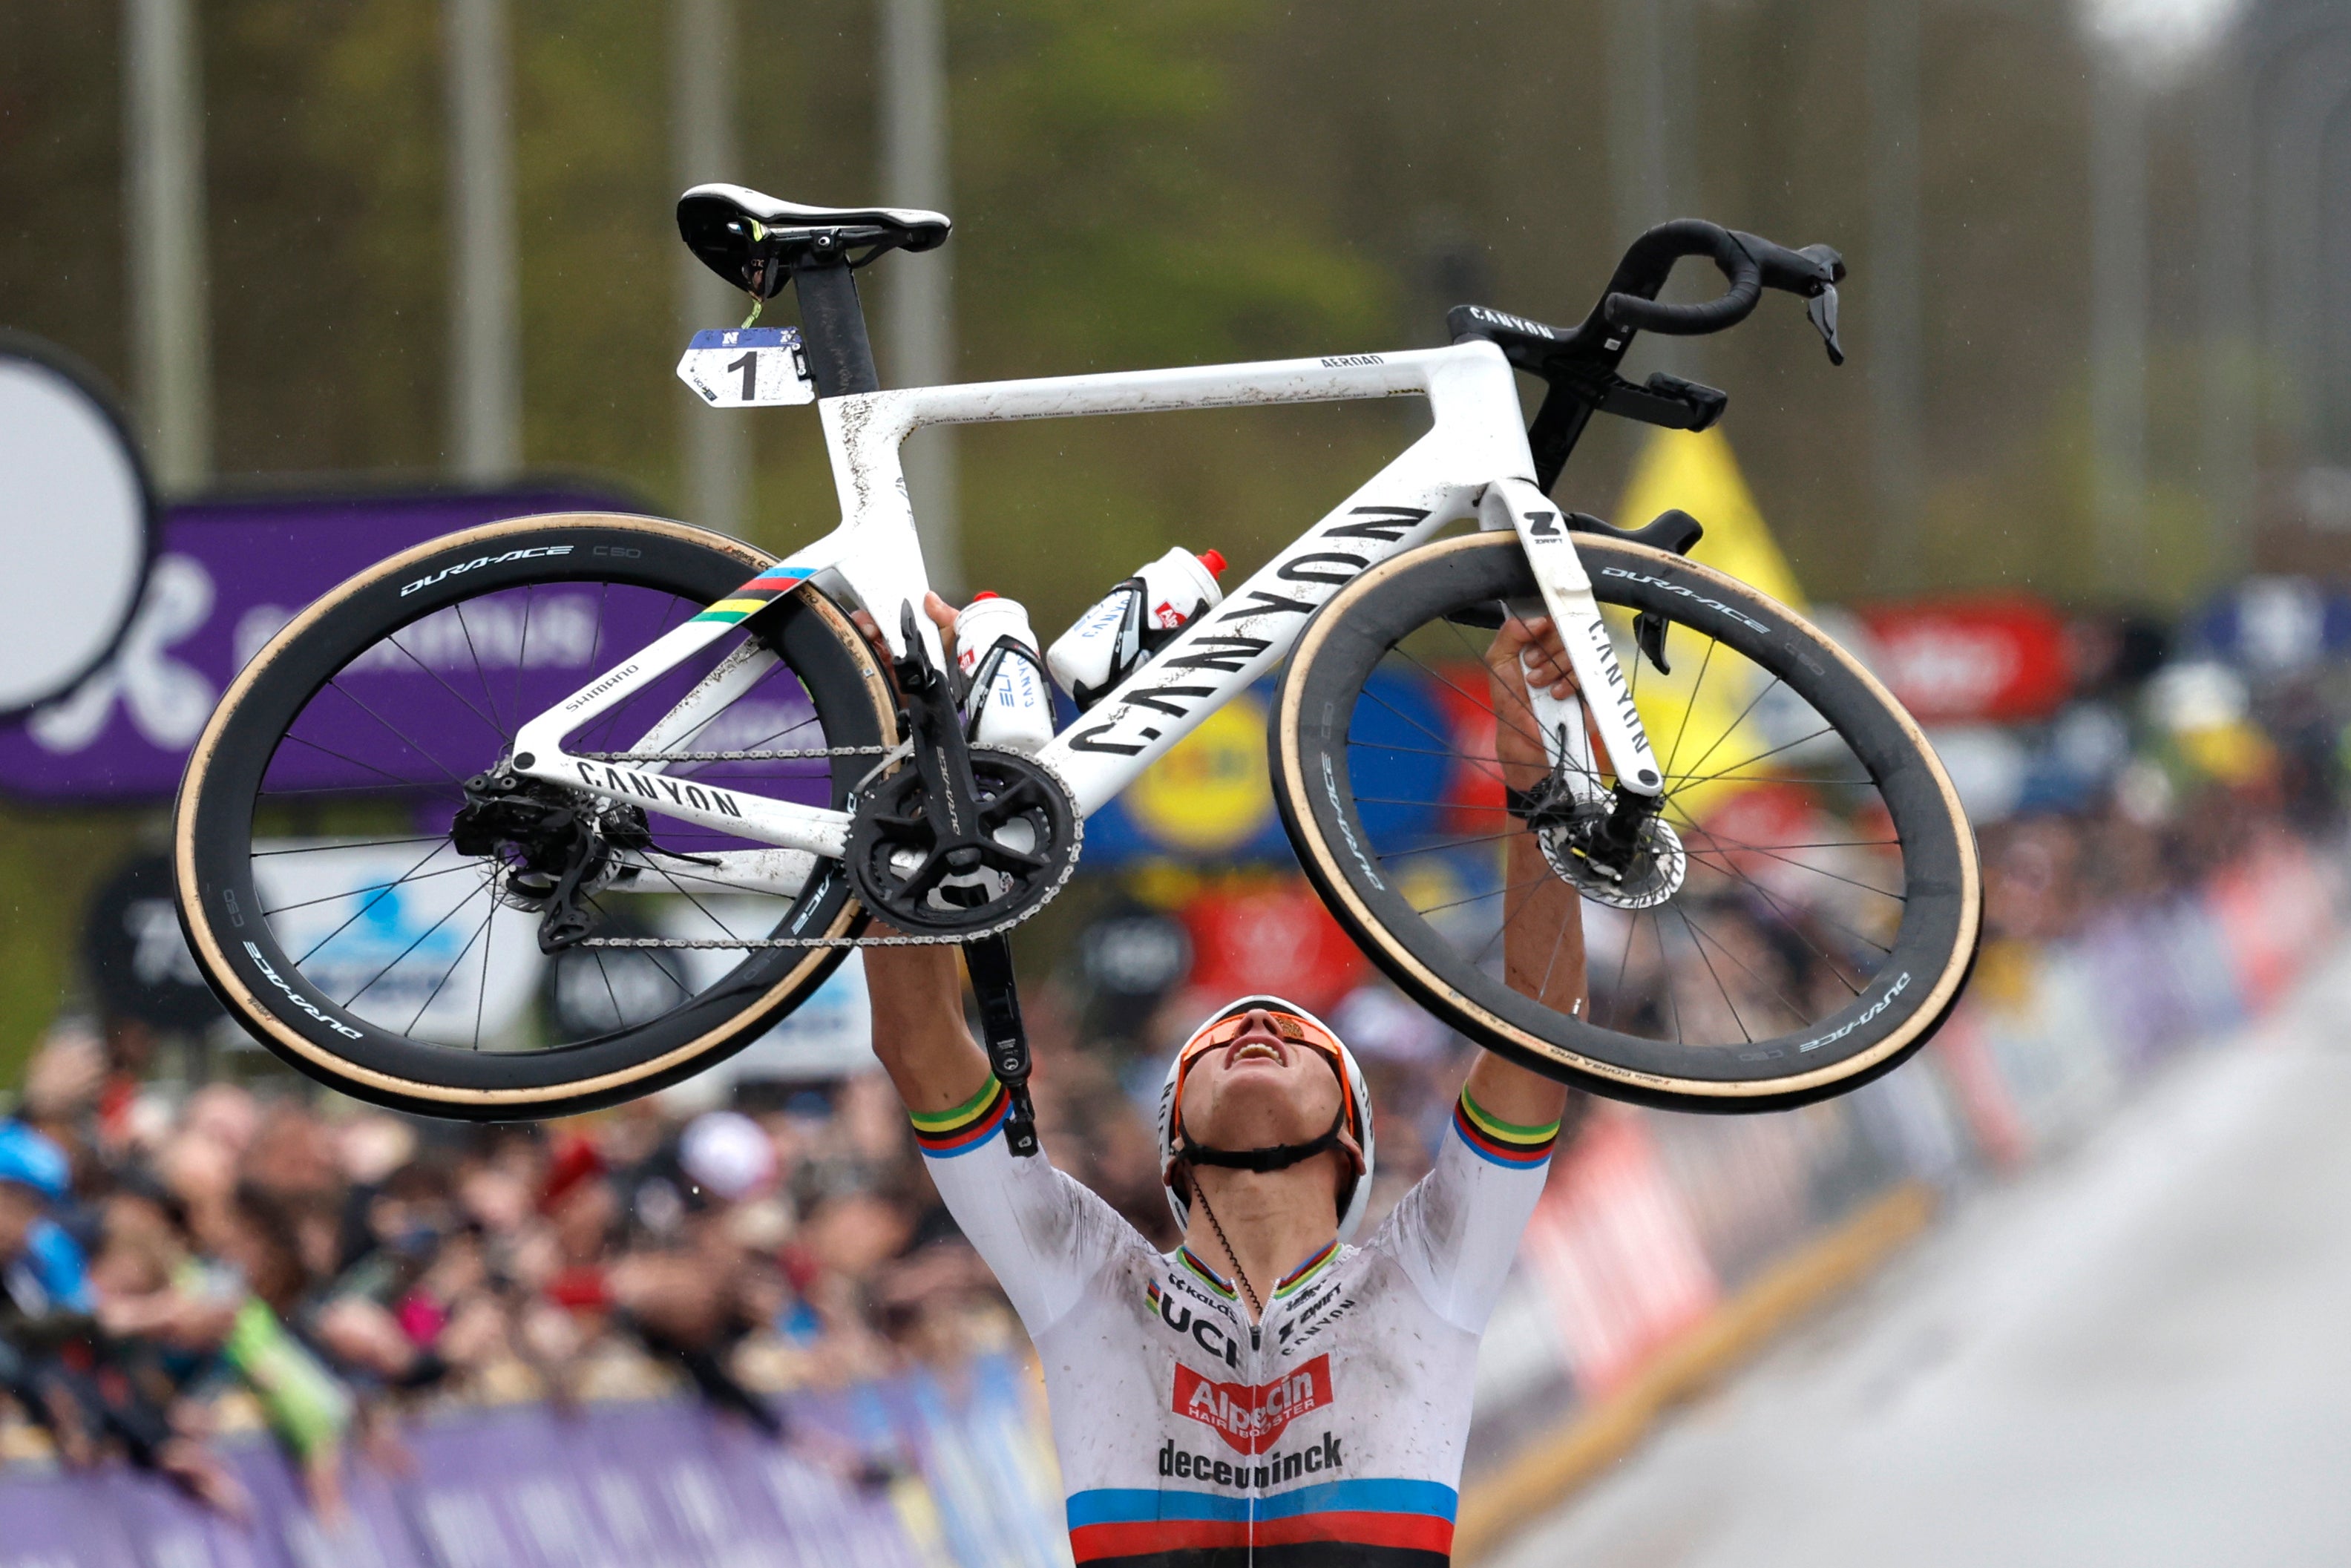 Mathieu van der Poel is hoping to complete a Tour of Flanders/Paris-Roubaix double